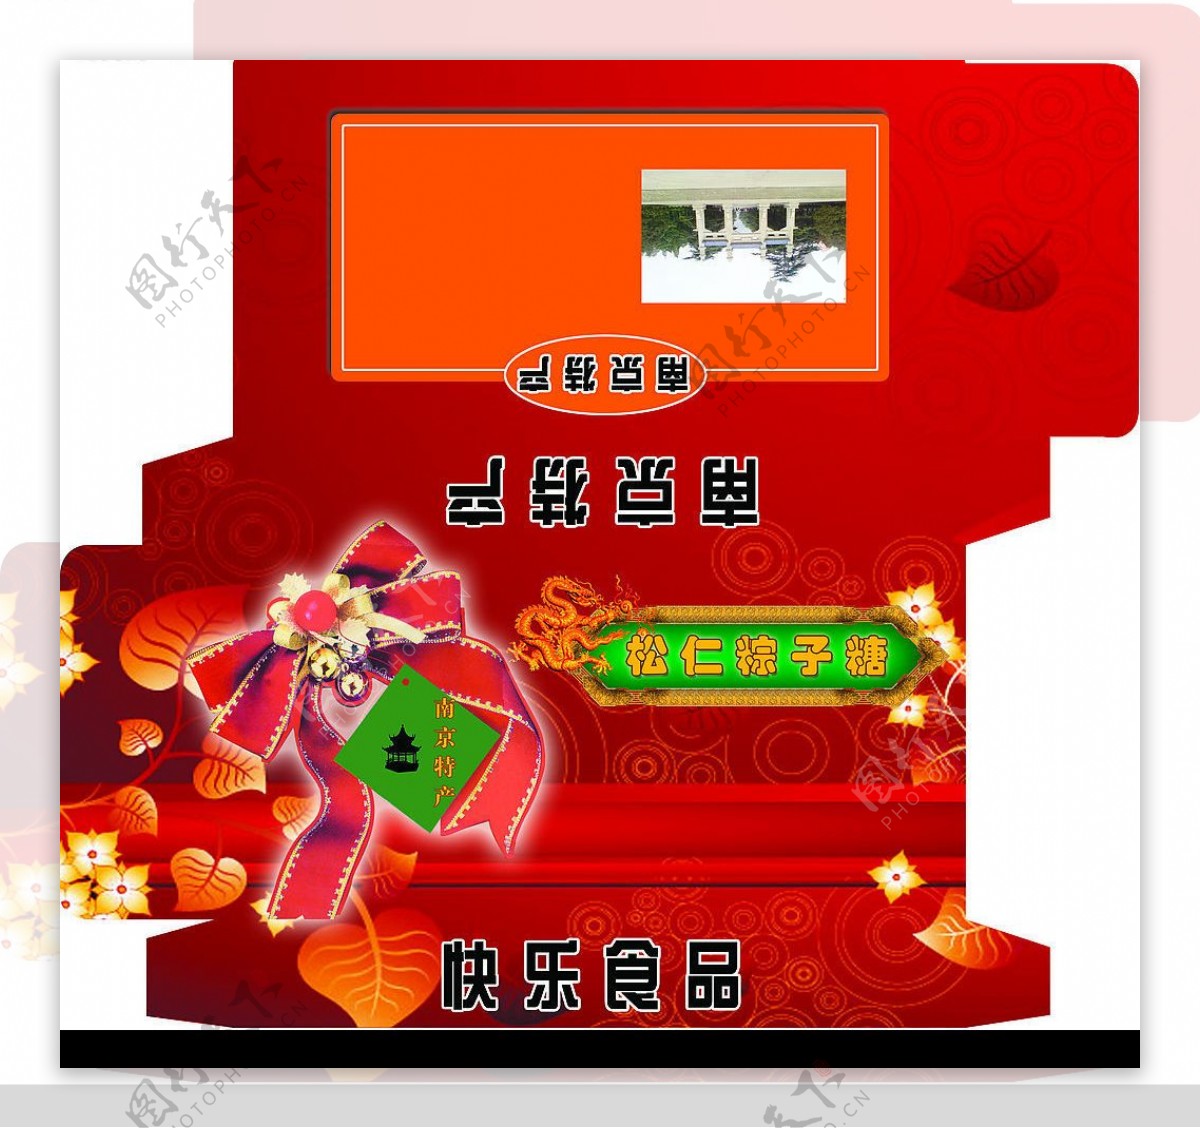 南京特产包装盒图片